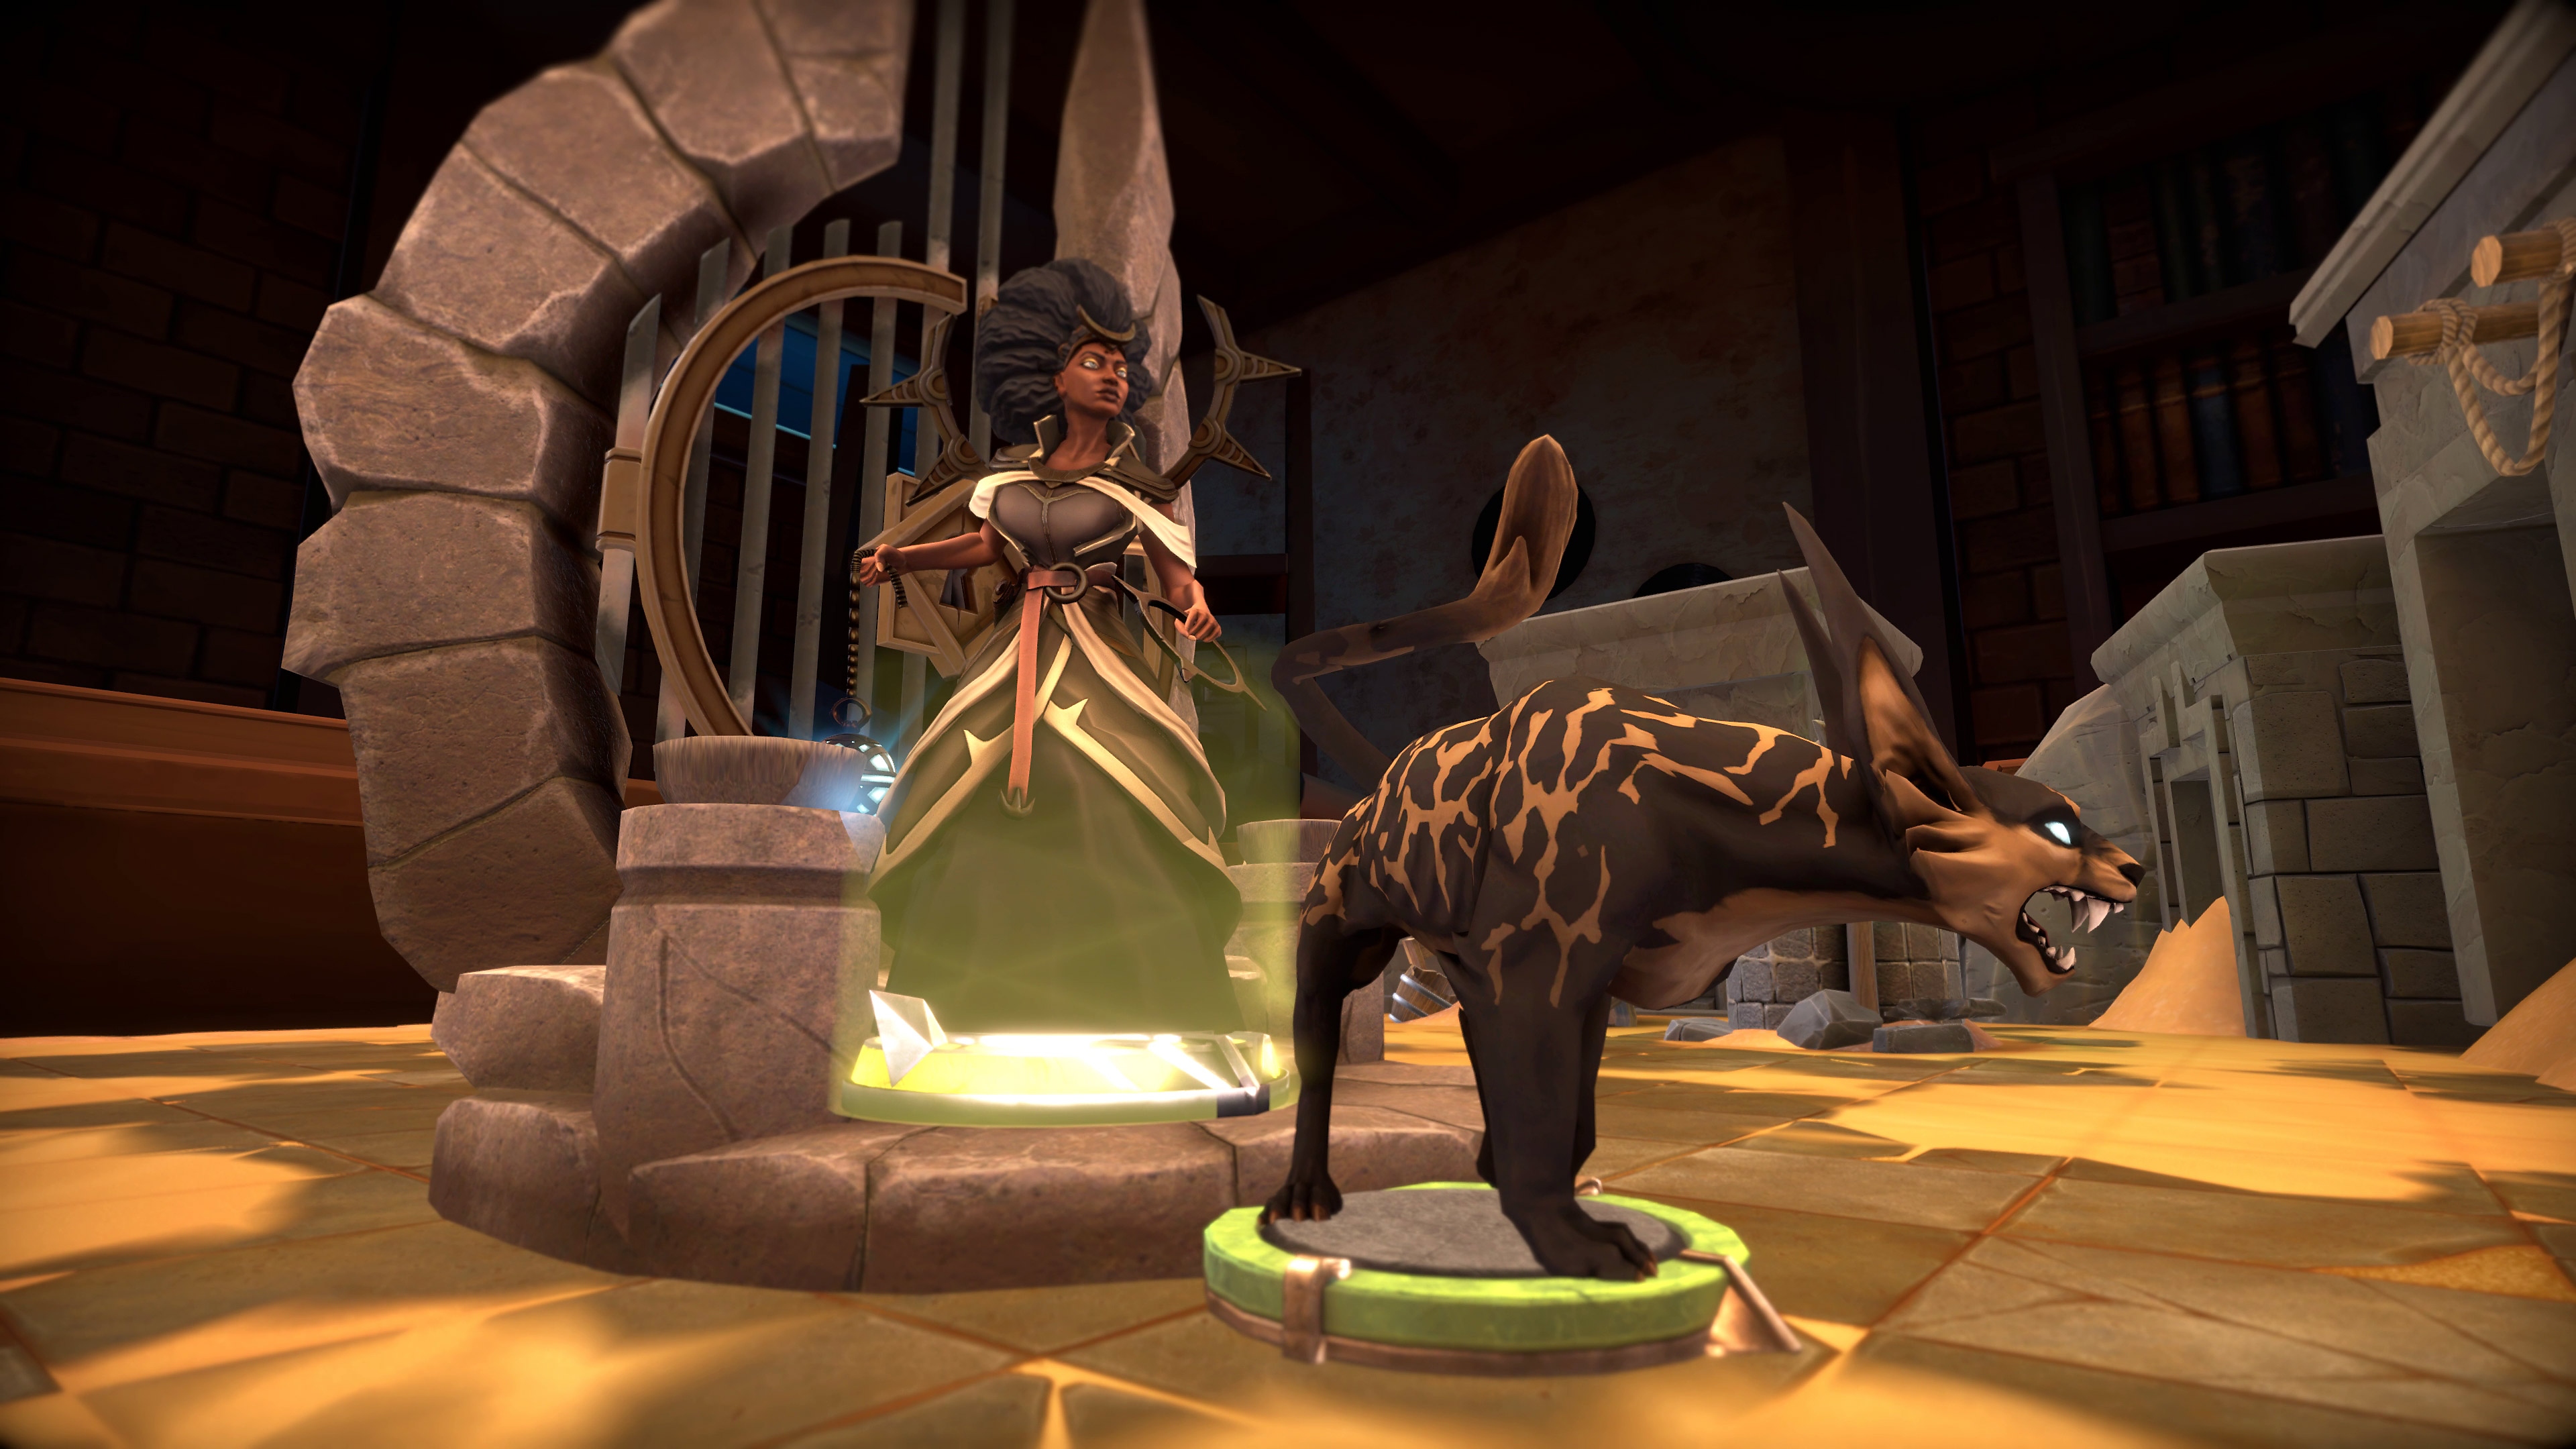 لقطة شاشة للعبة Demeo تعرض مخلوقًا يشبه الضبع يزمجر وجاهز للهجوم